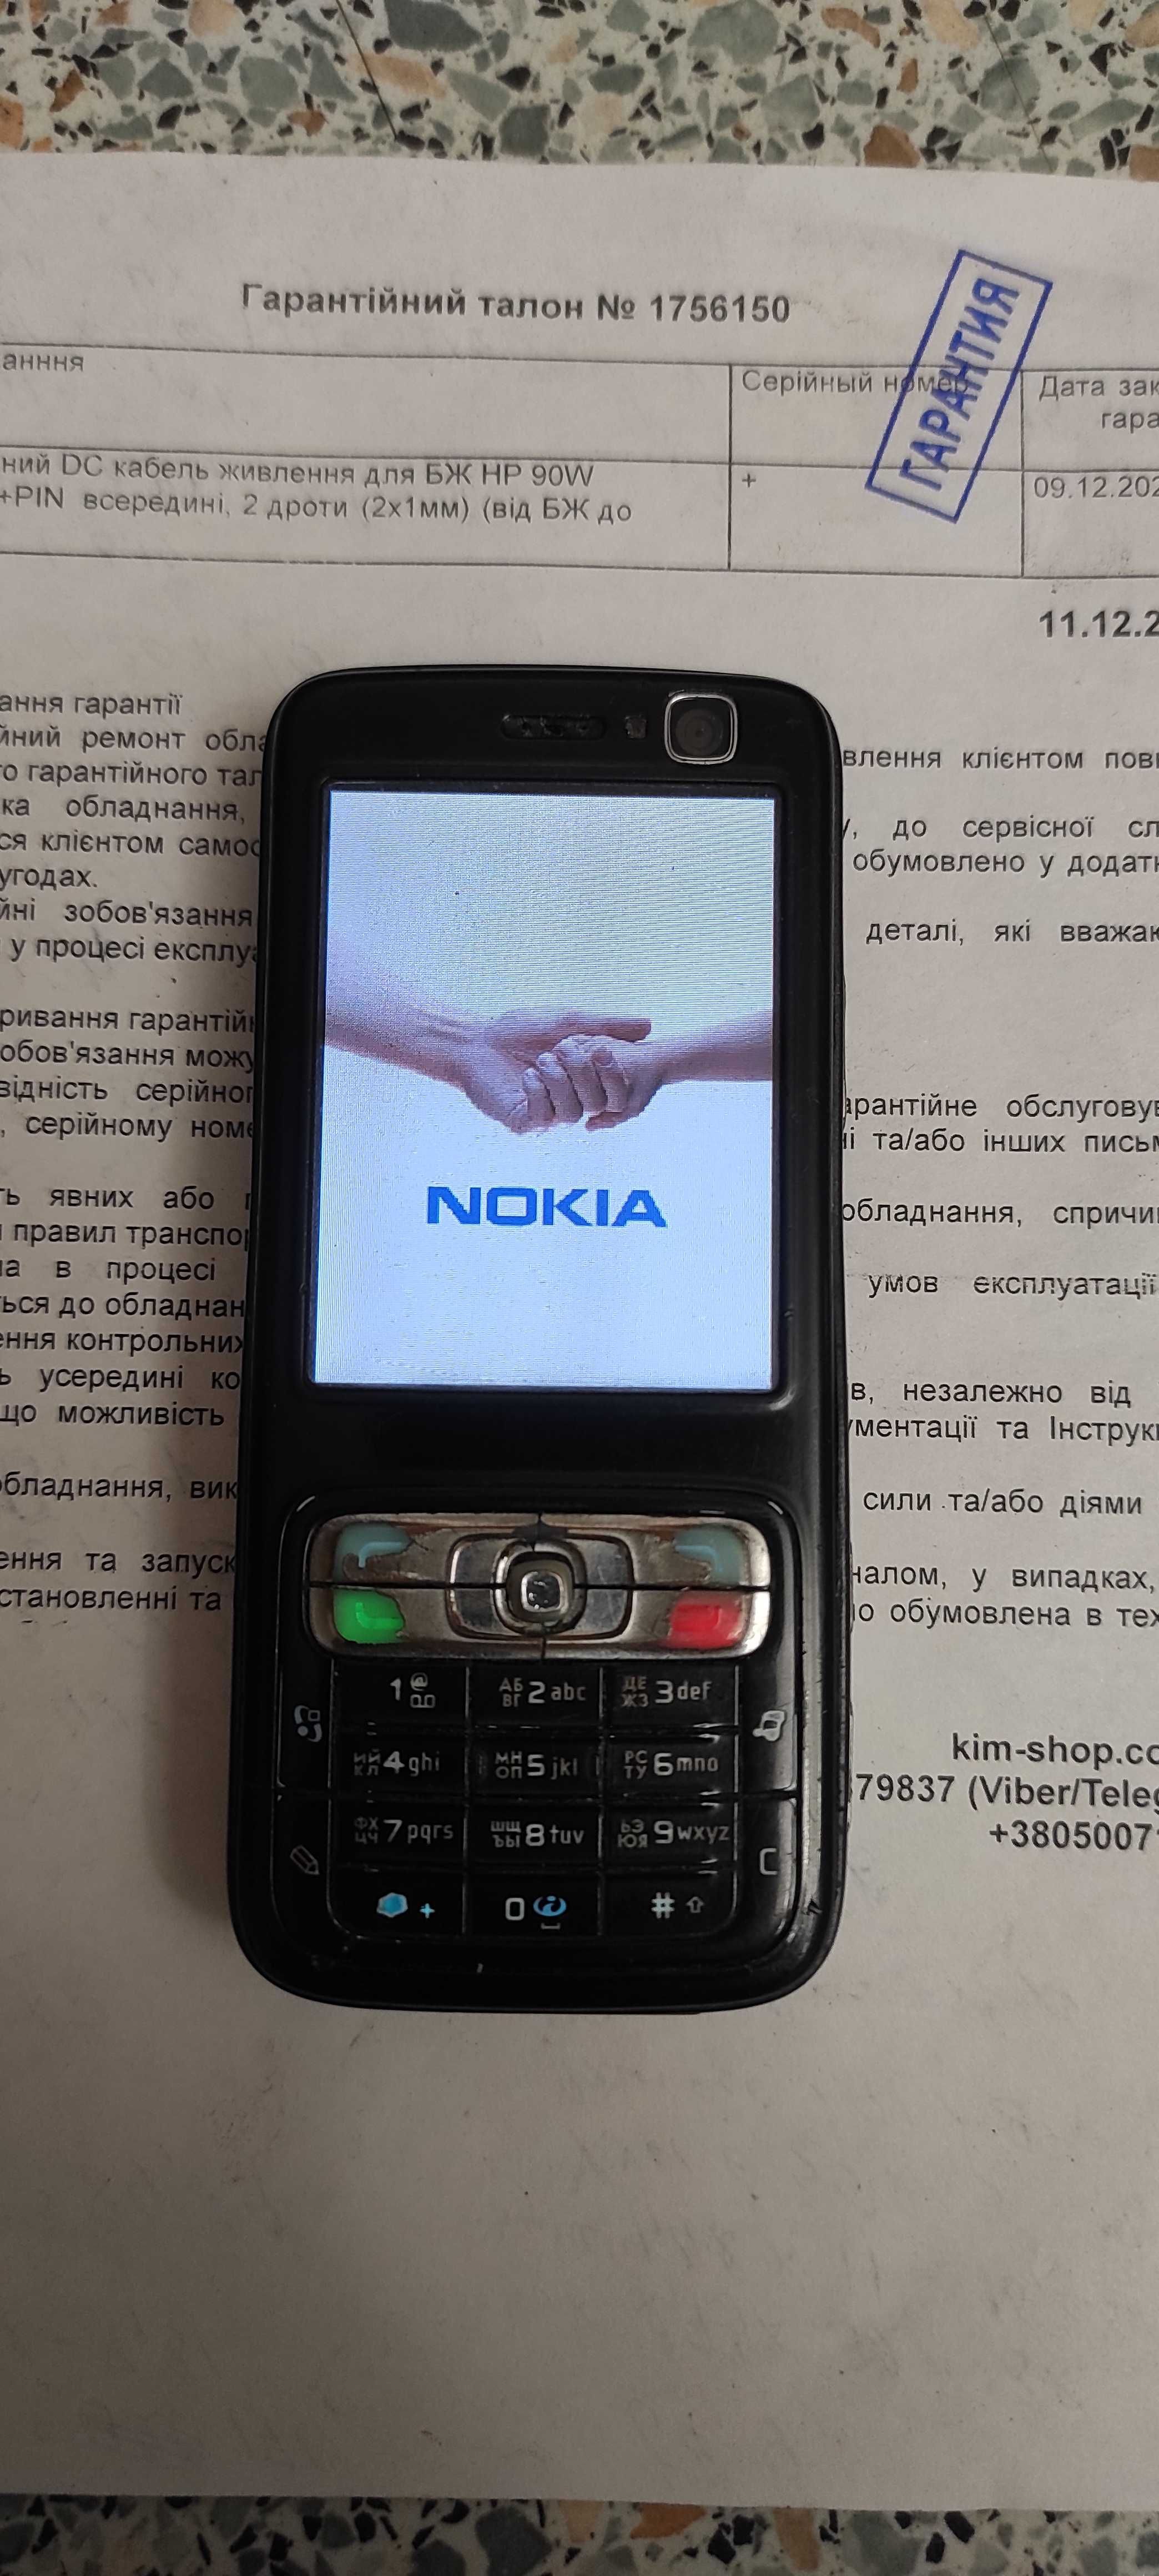 Nokia N73-1 (RM-133)